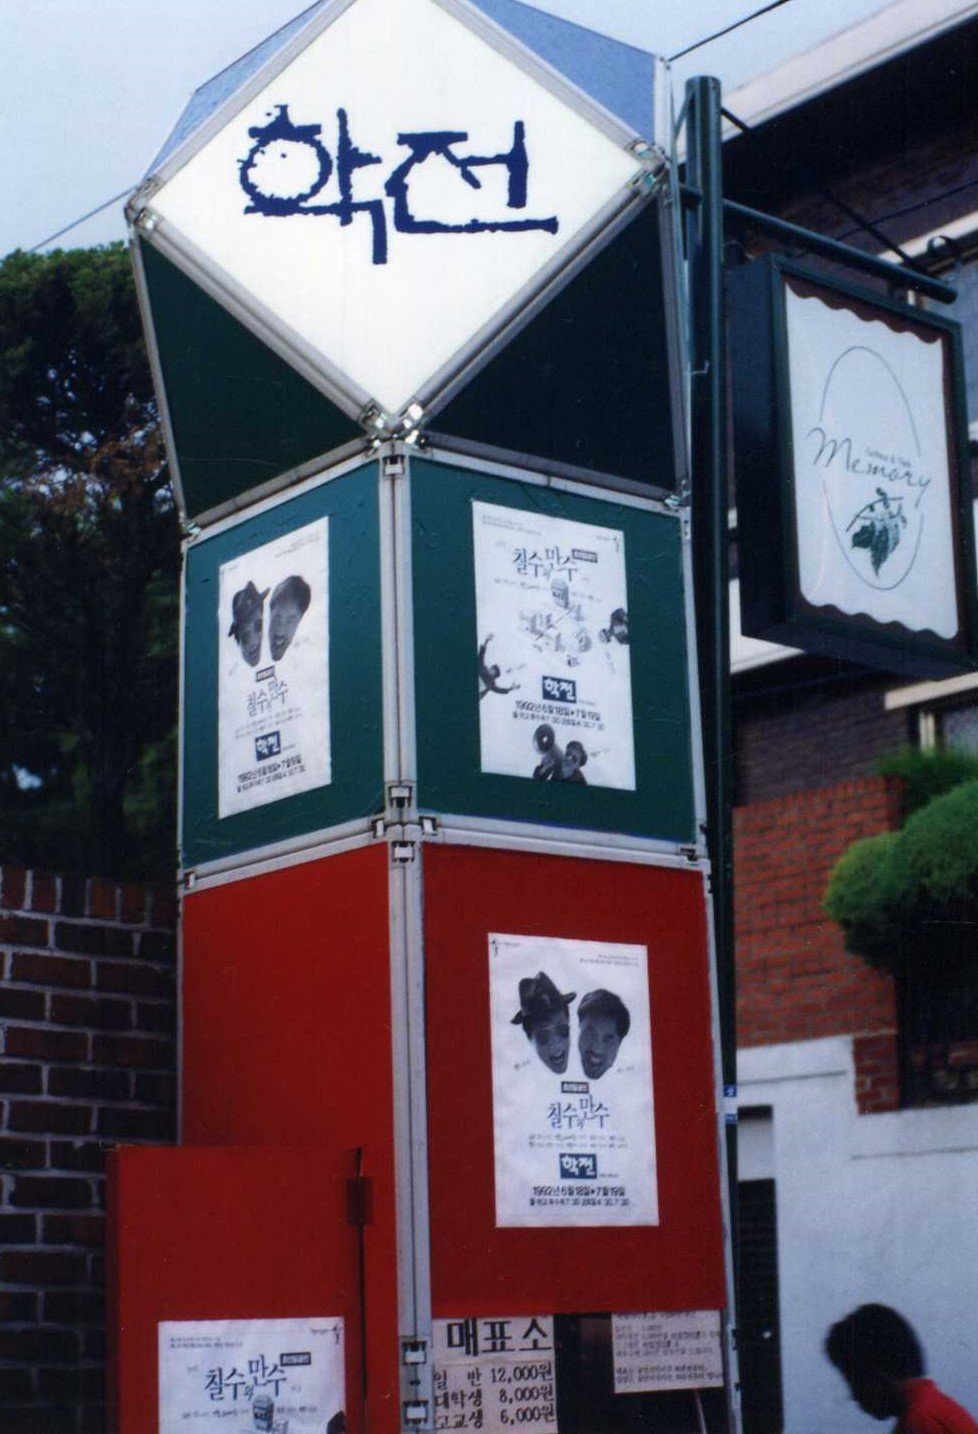 1992년 서울 종로구 대학로 학전 입구. 제23회 동아연극상 연출상을 수상한 극단 연우무대의 연극 ‘칠수와 만수’ 포스터가 걸려 있다. 학전 제공